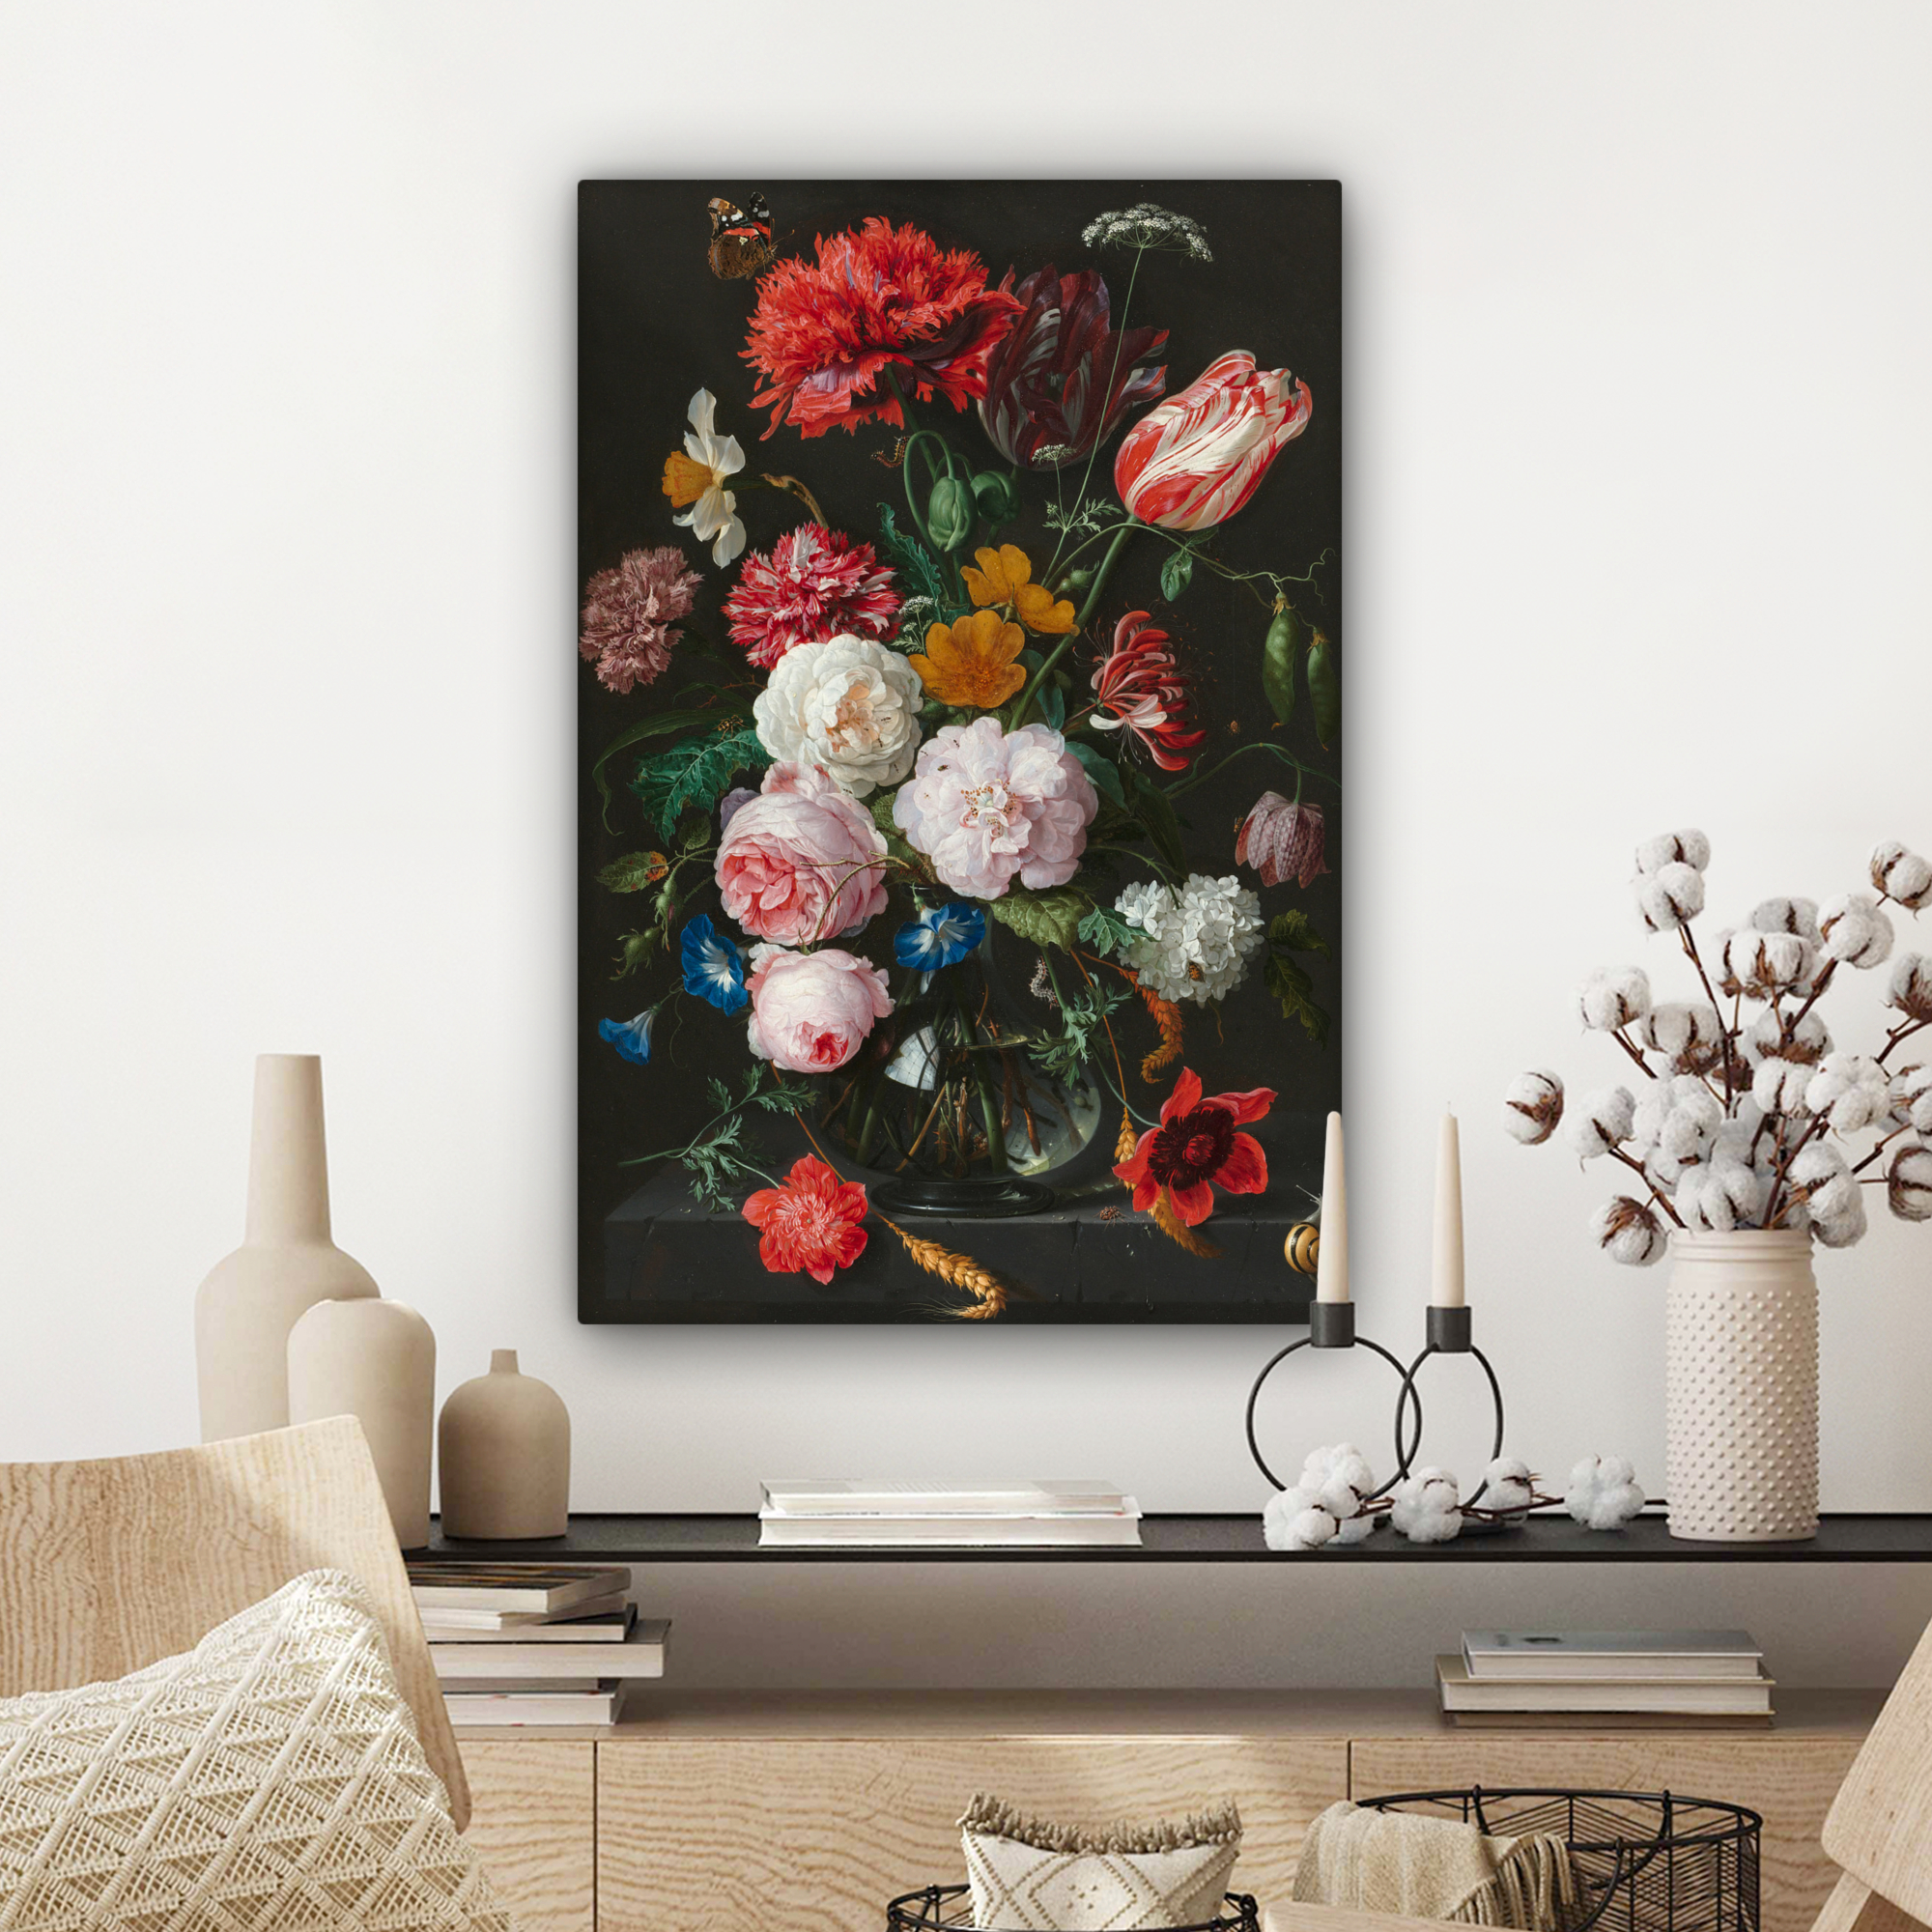 Leinwandbild - Stillleben mit Blumen in einer Glasvase - Gemälde von Jan Davidsz. de Heem-3